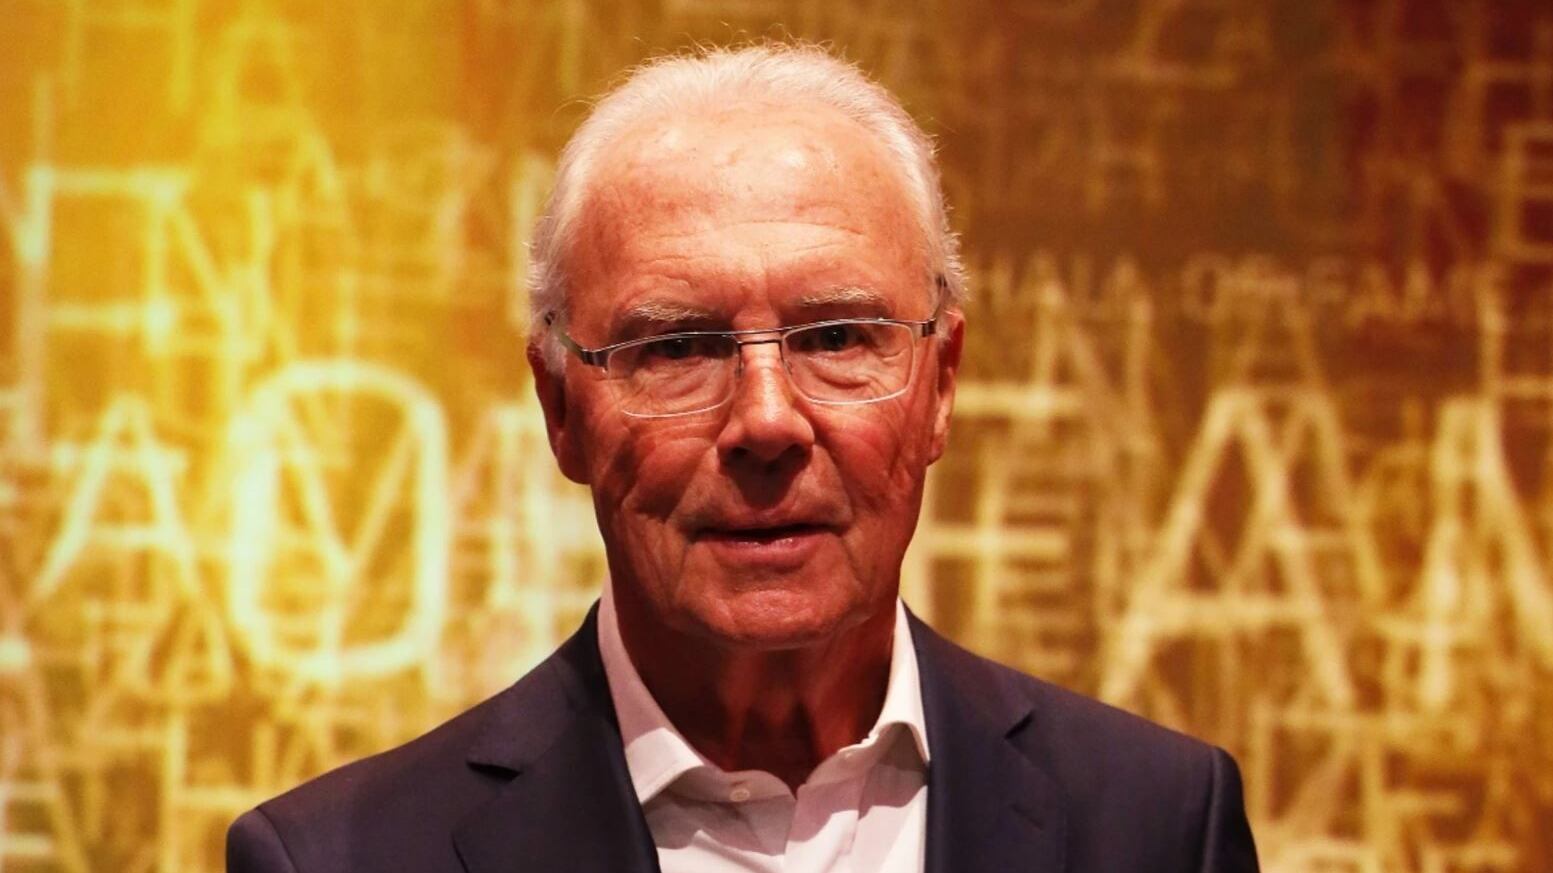 El fútbol mundial está de luto, muere el legendario jugador alemán Franz Beckenbauer